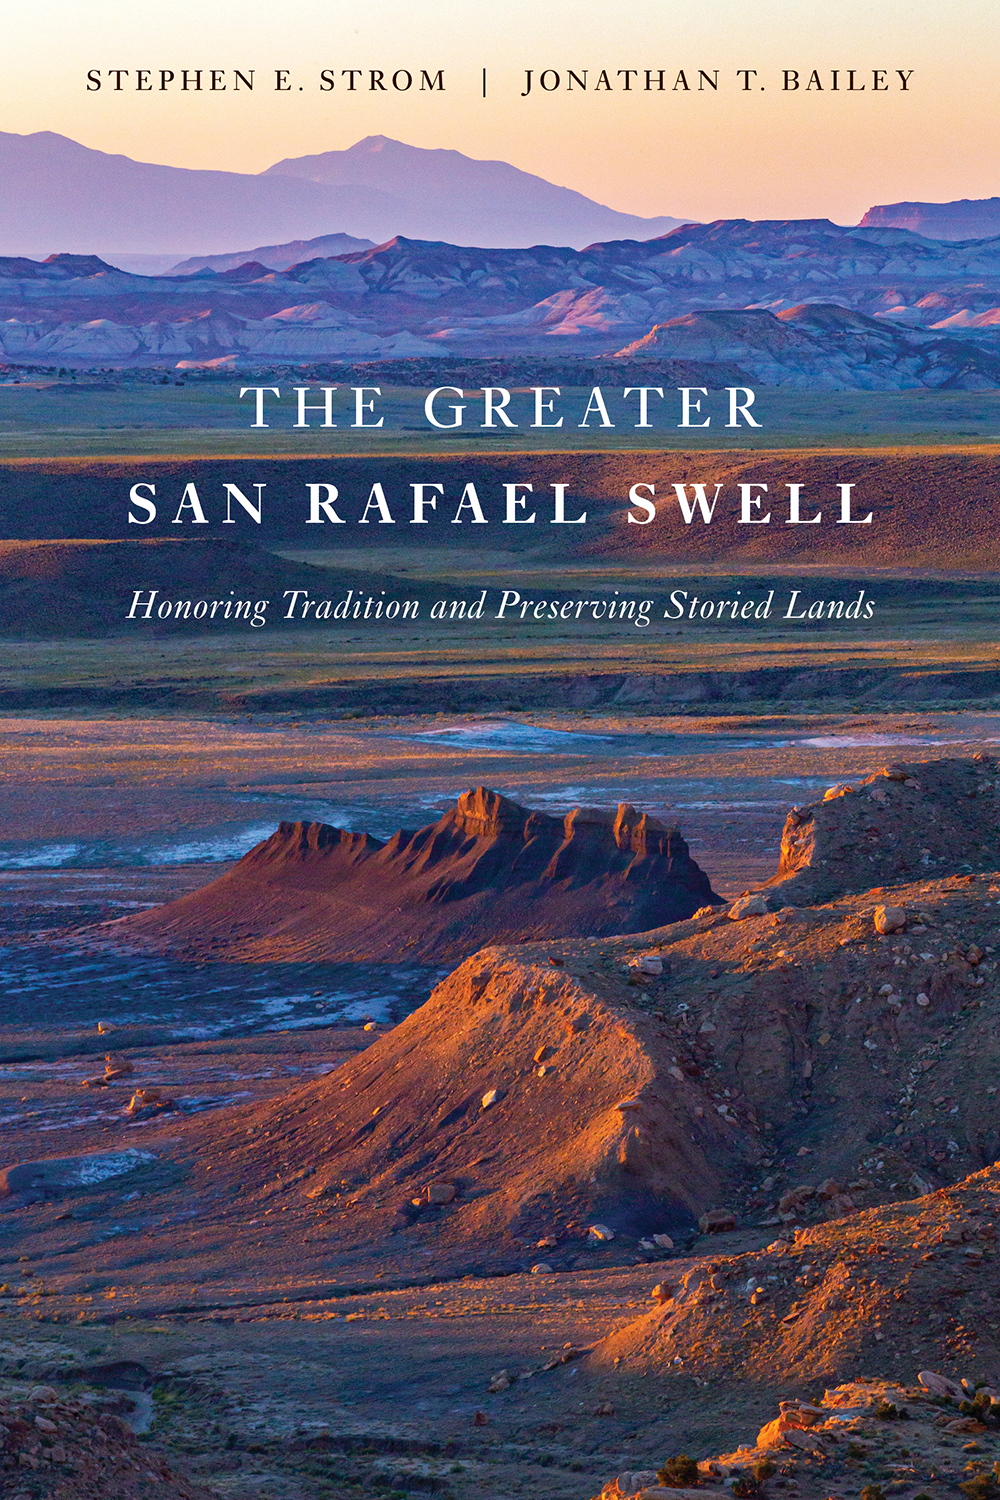 The Greater San Rafael Swell